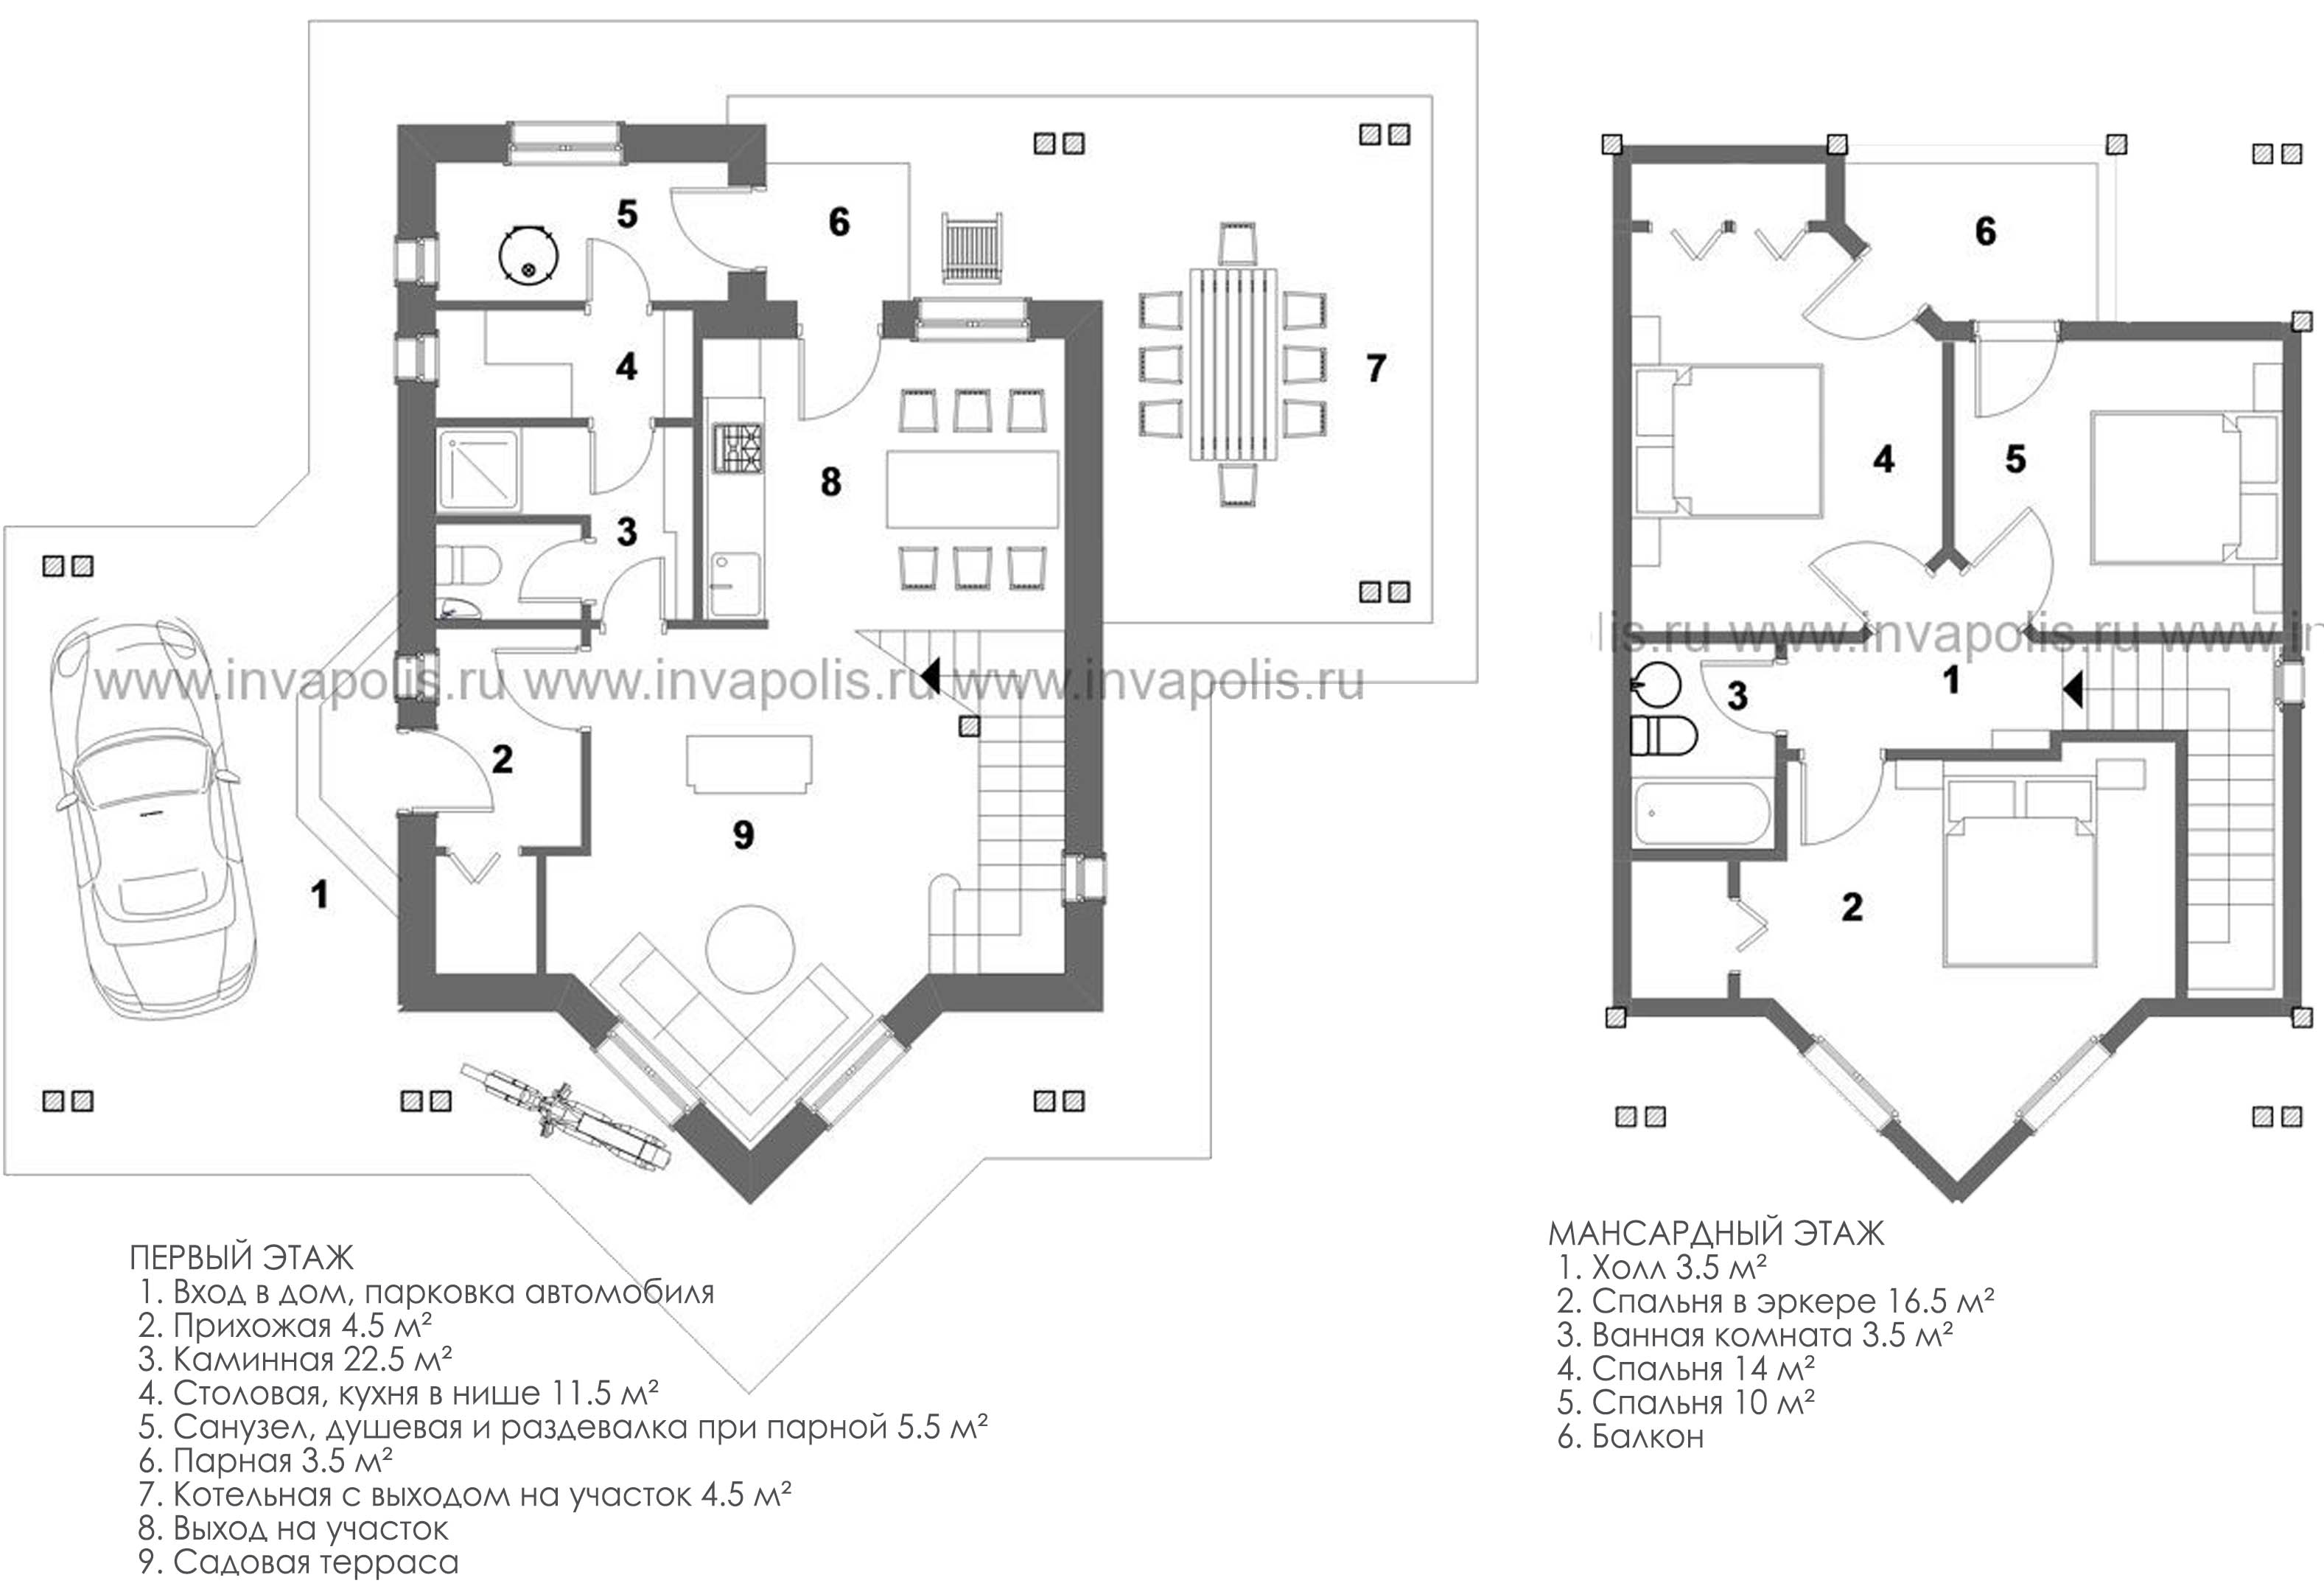 ЯХРОМА - план комбинированного узкого дома - готовый проект от Инваполис